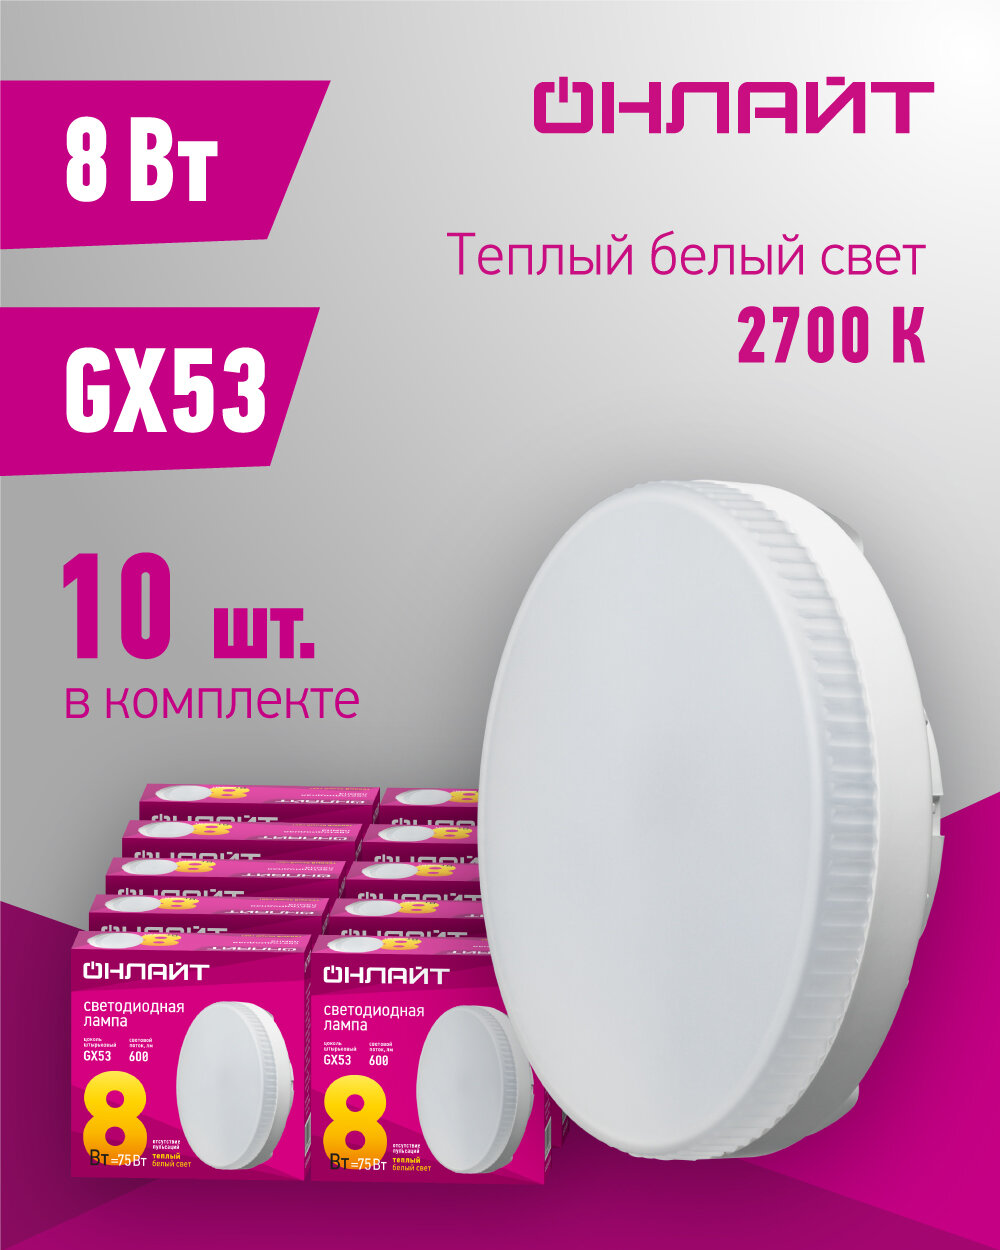 Лампа светодиодная онлайт 71 636, 8 Вт, таблетка GX53, теплый свет 2700К, упаковка 10 шт.